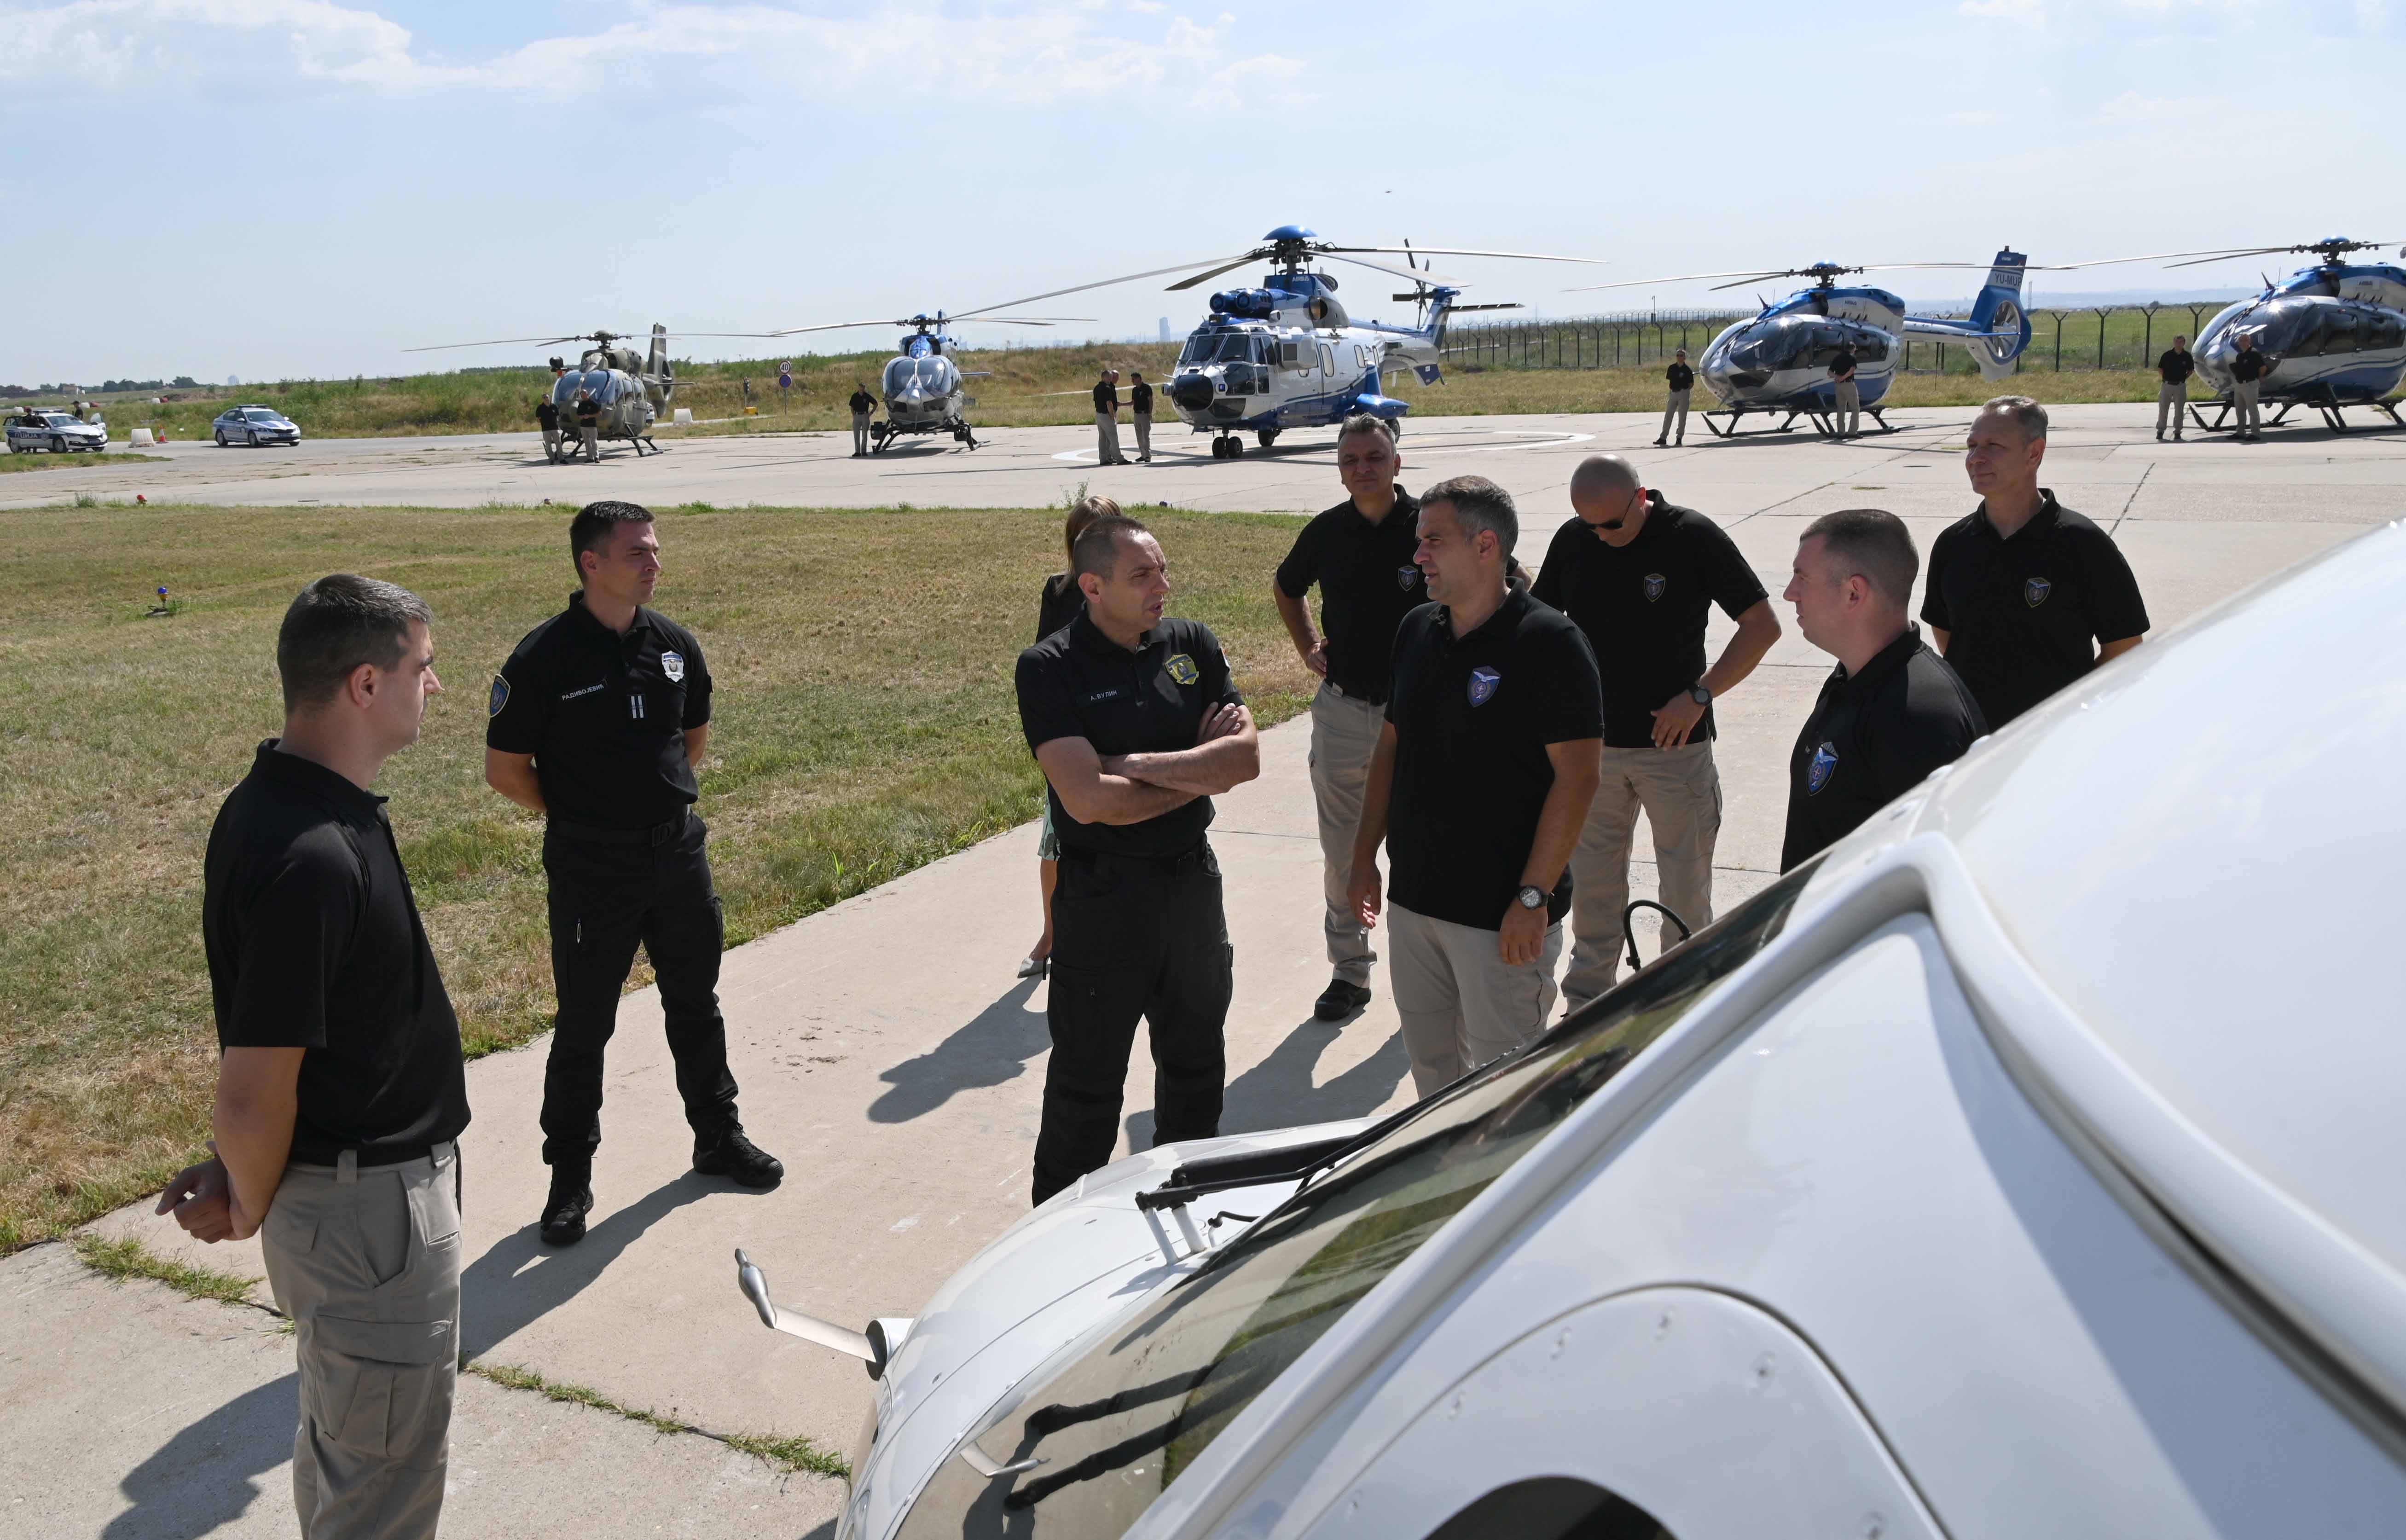 Министар Александар Вулин обишао Хеликоптерску јединицу и уверио се у снагу и јачину хеликоптера Х-215 „Супер Пума“